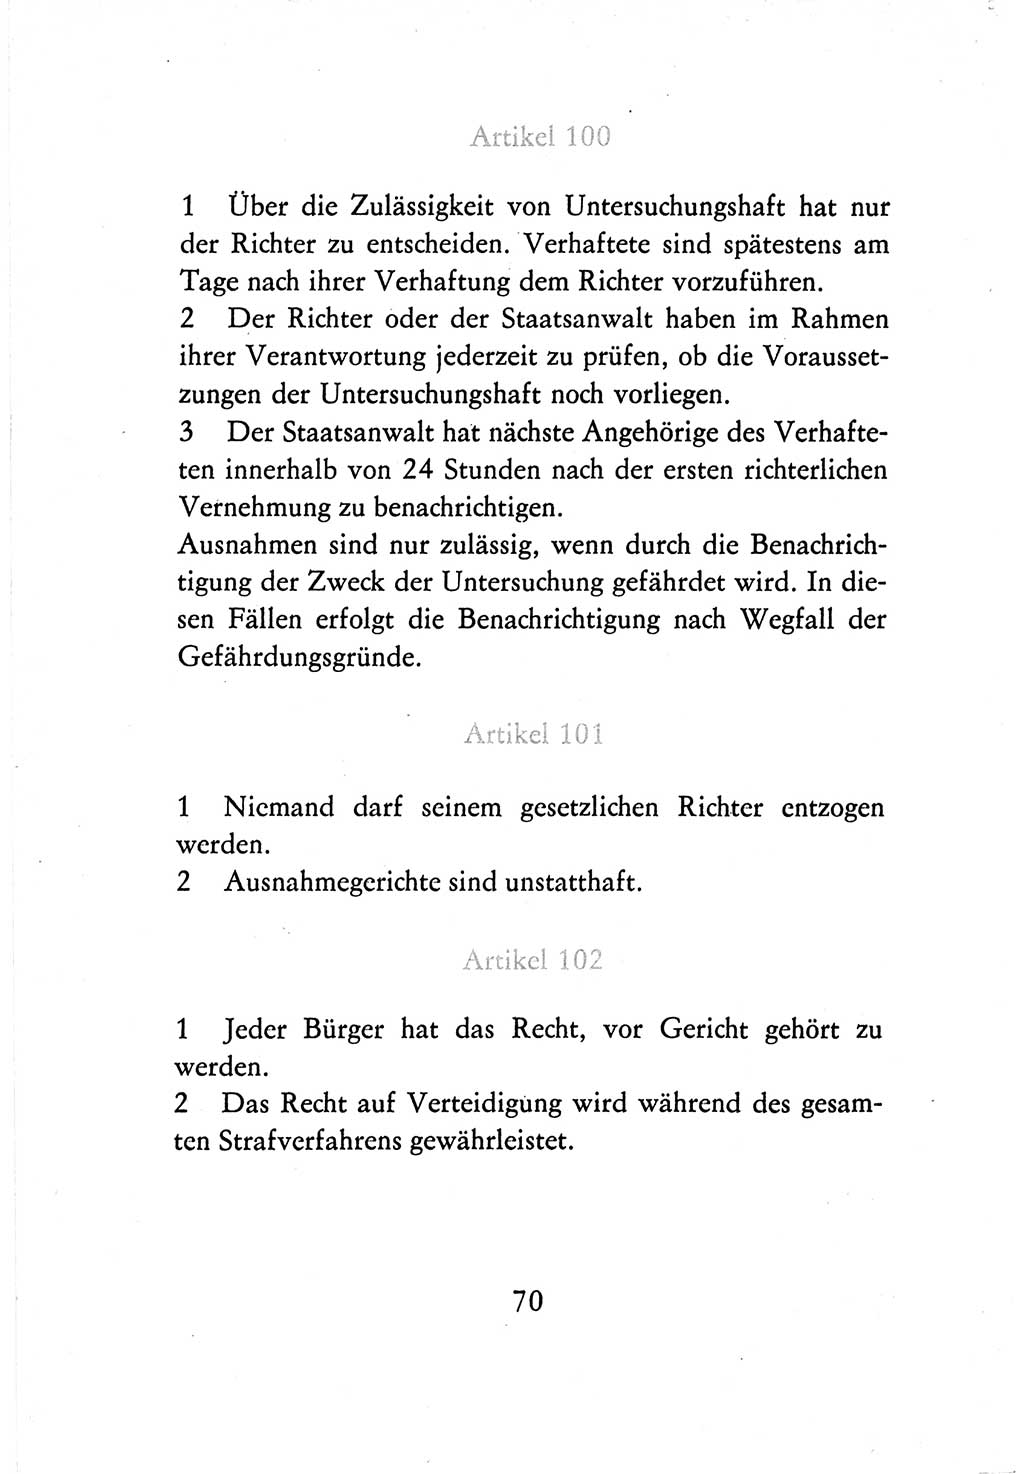 Verfassung der Deutschen Demokratischen Republik (DDR) vom 7. Oktober 1974, Seite 70 (Verf. DDR 1974, S. 70)